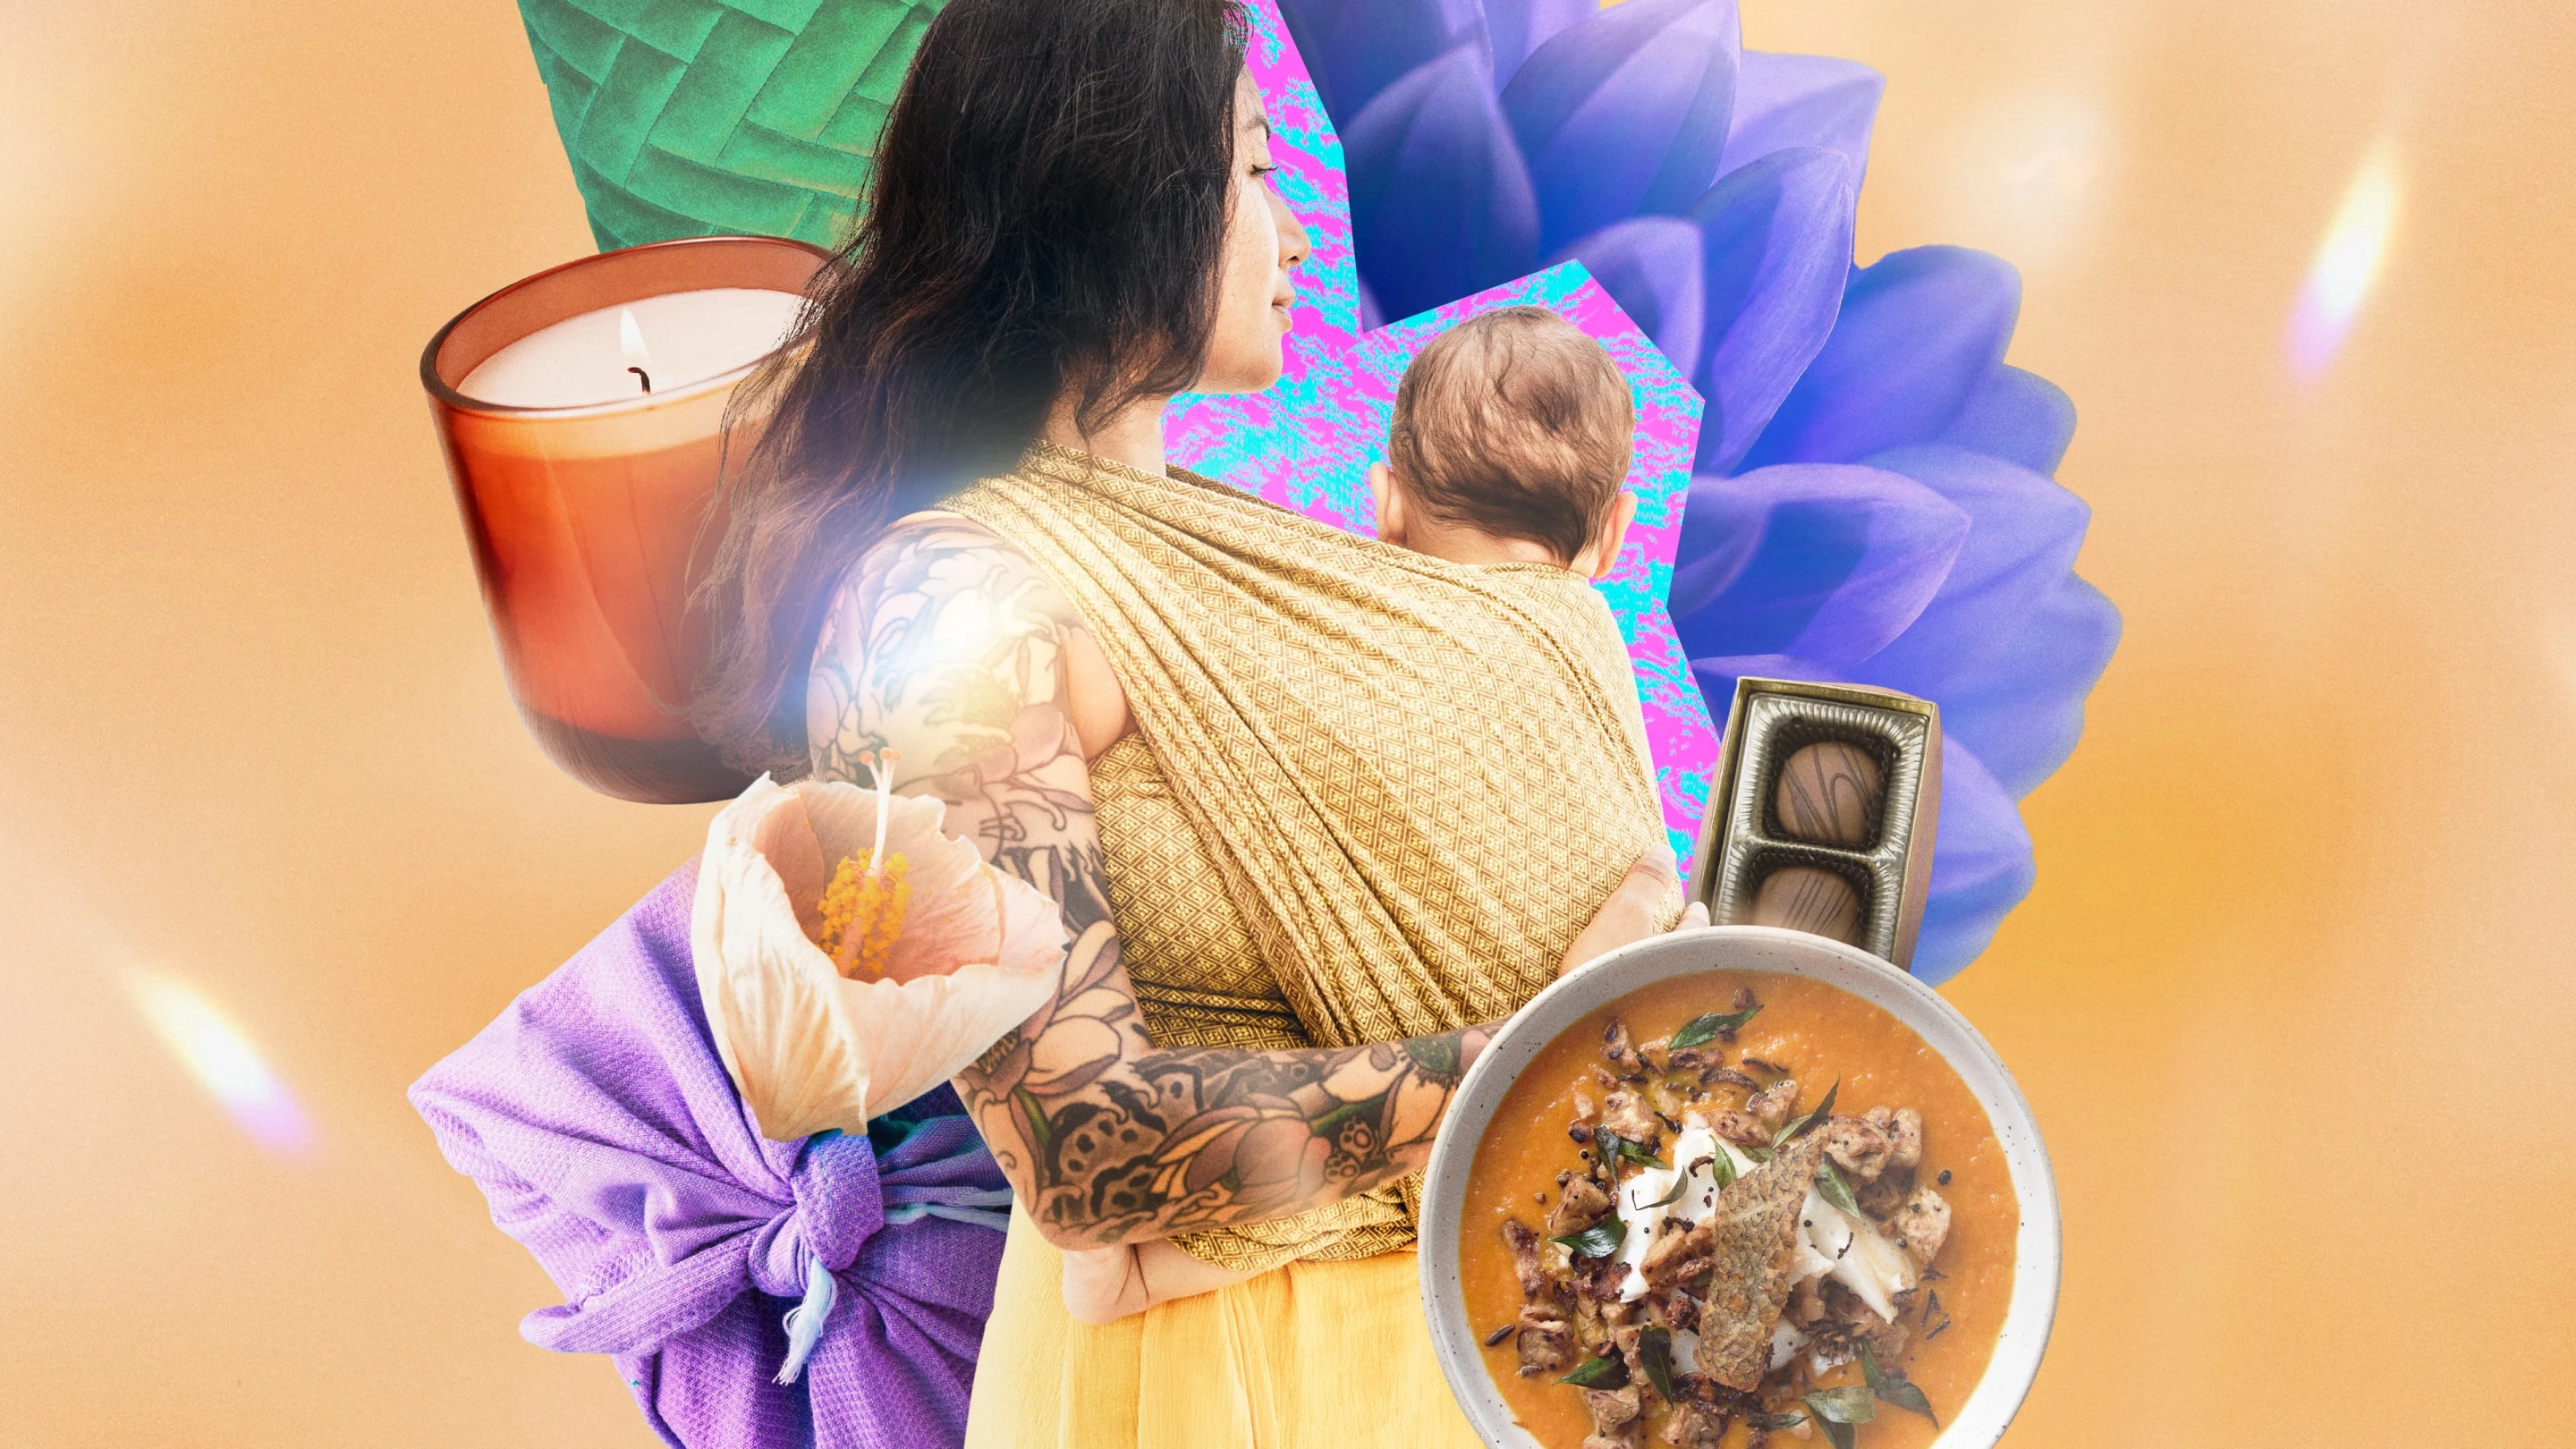 Una donna con dei tatuaggi che trasporta un bebè in fascia circondata da vari oggetti tra cui una candela, petali di fiori, una scatola di cioccolatini, zuppa e fasce in tessuto.